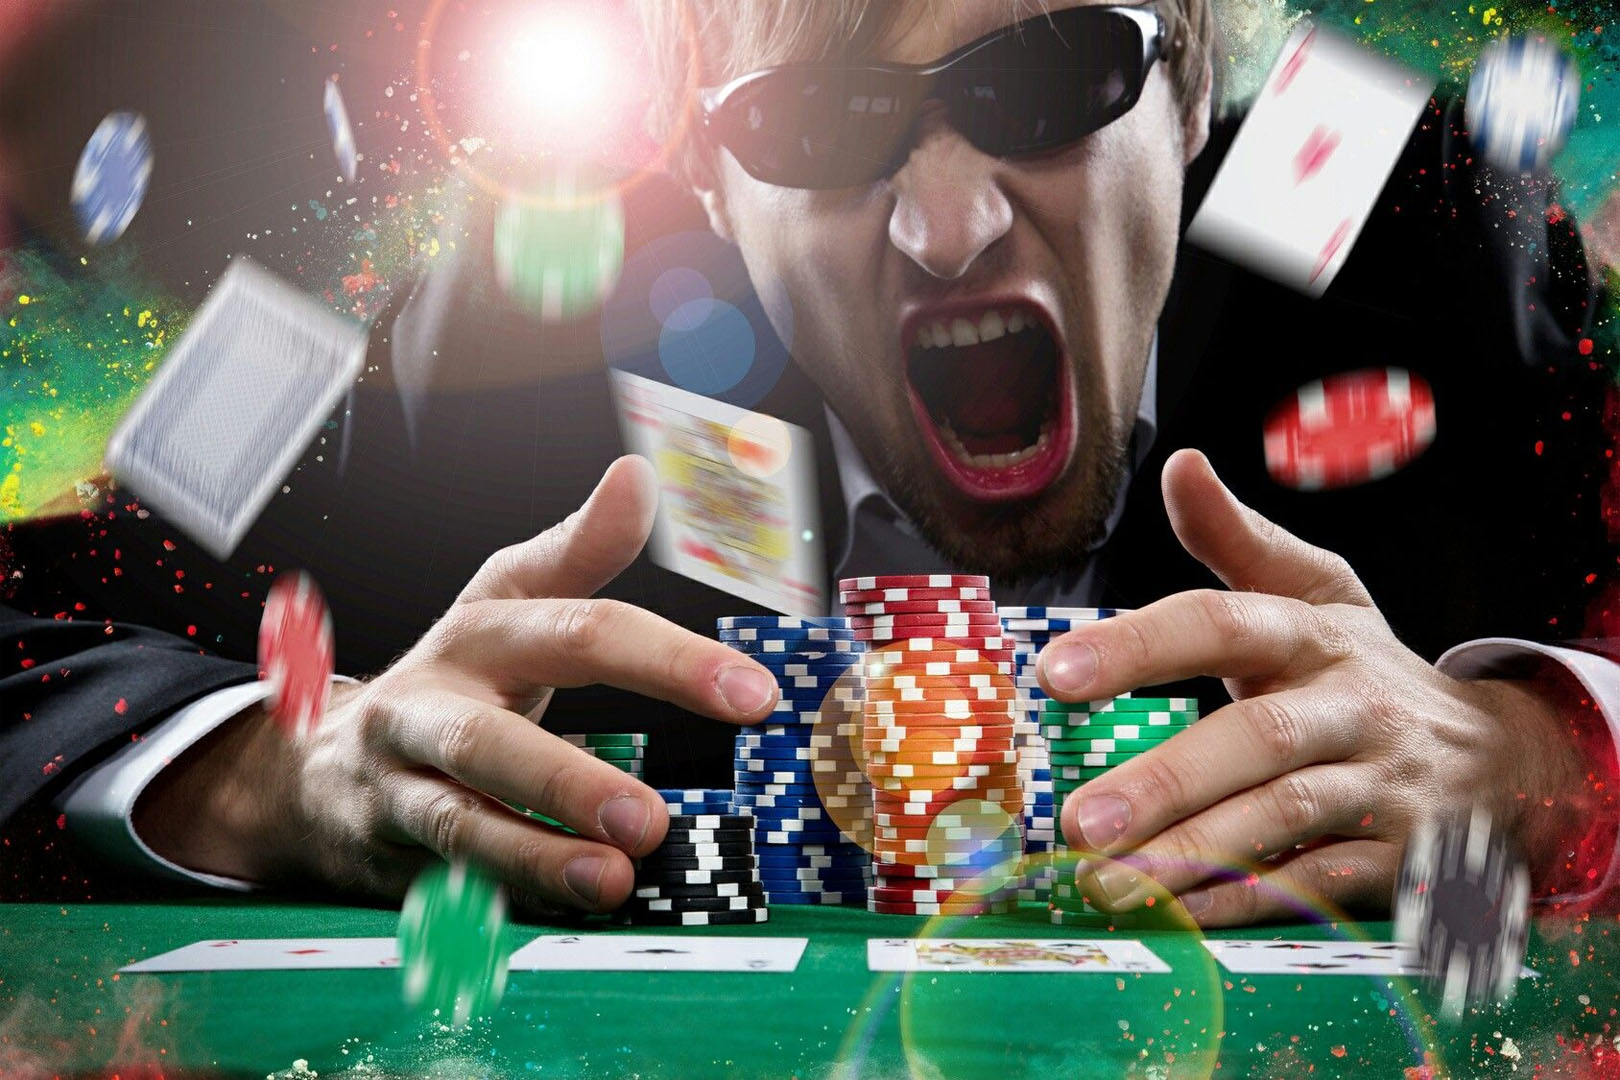 Он играть в карты и выигрывать деньги. Покер. Выигрыш в казино. Игровая зависимость. Азартные игры в интернете.